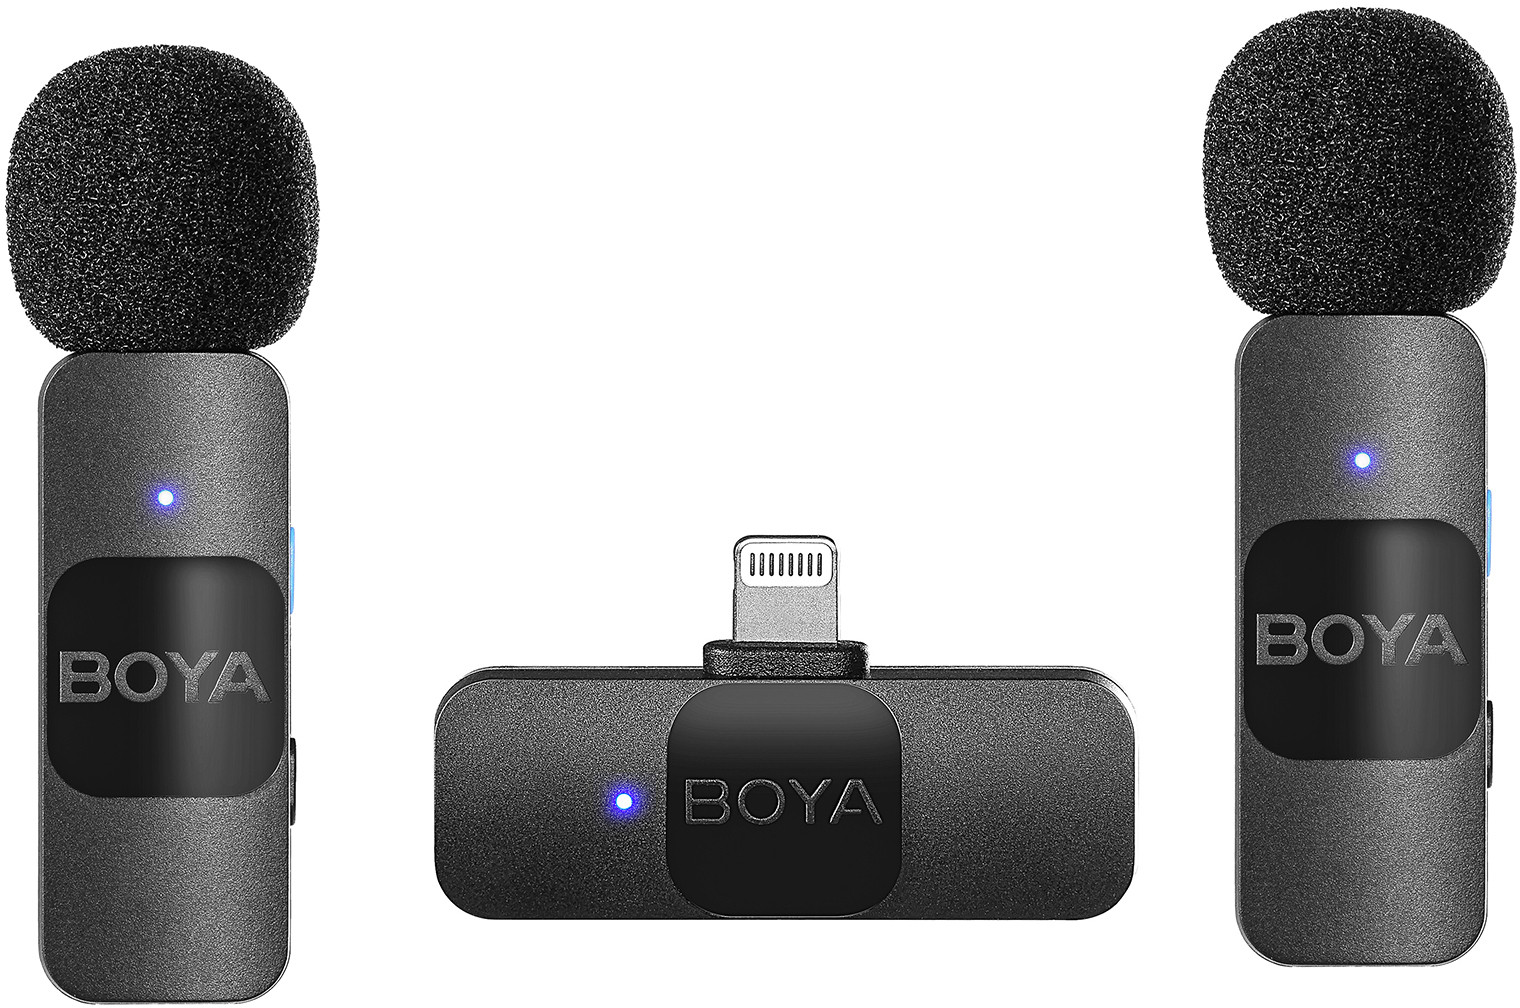 Boya беспроводной микрофон BY-V2 Lightning